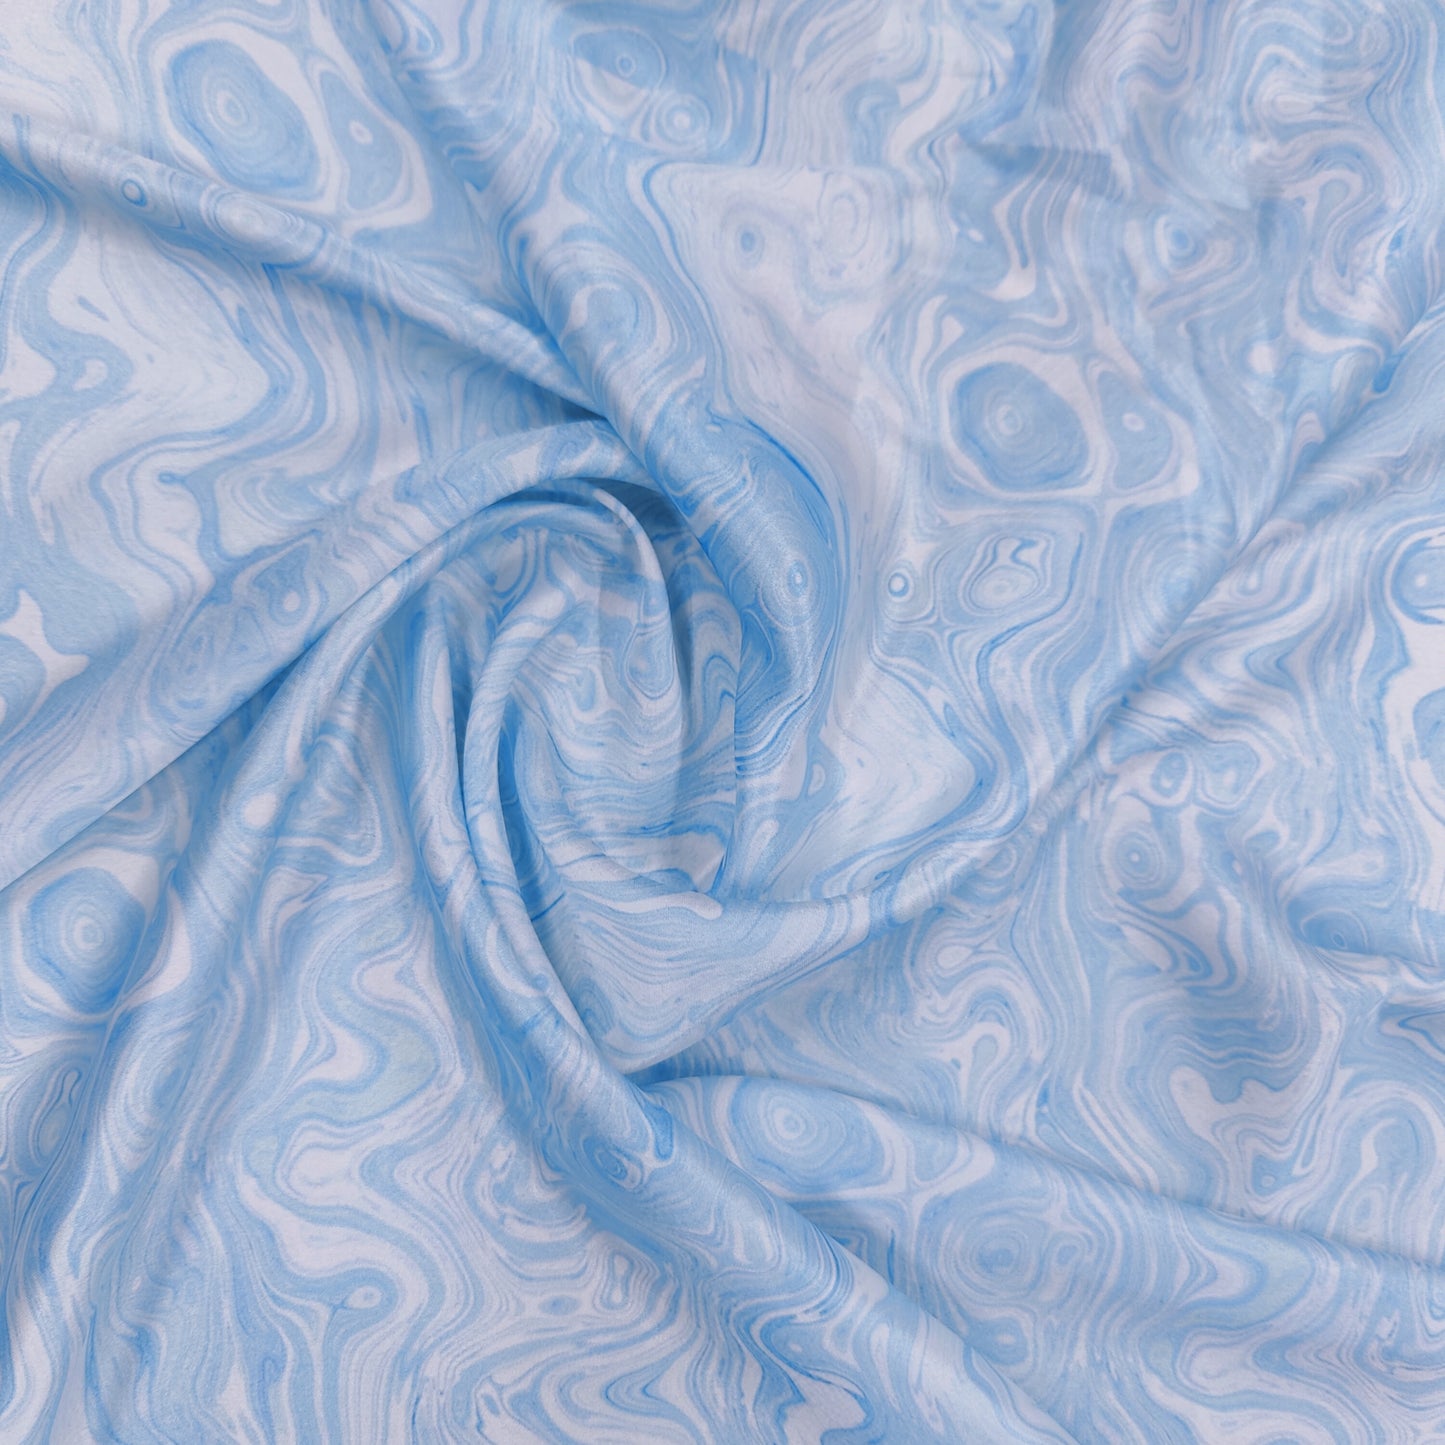 Sky Blue Marble Print Satin Fabric TU 5906 - TradeUNO